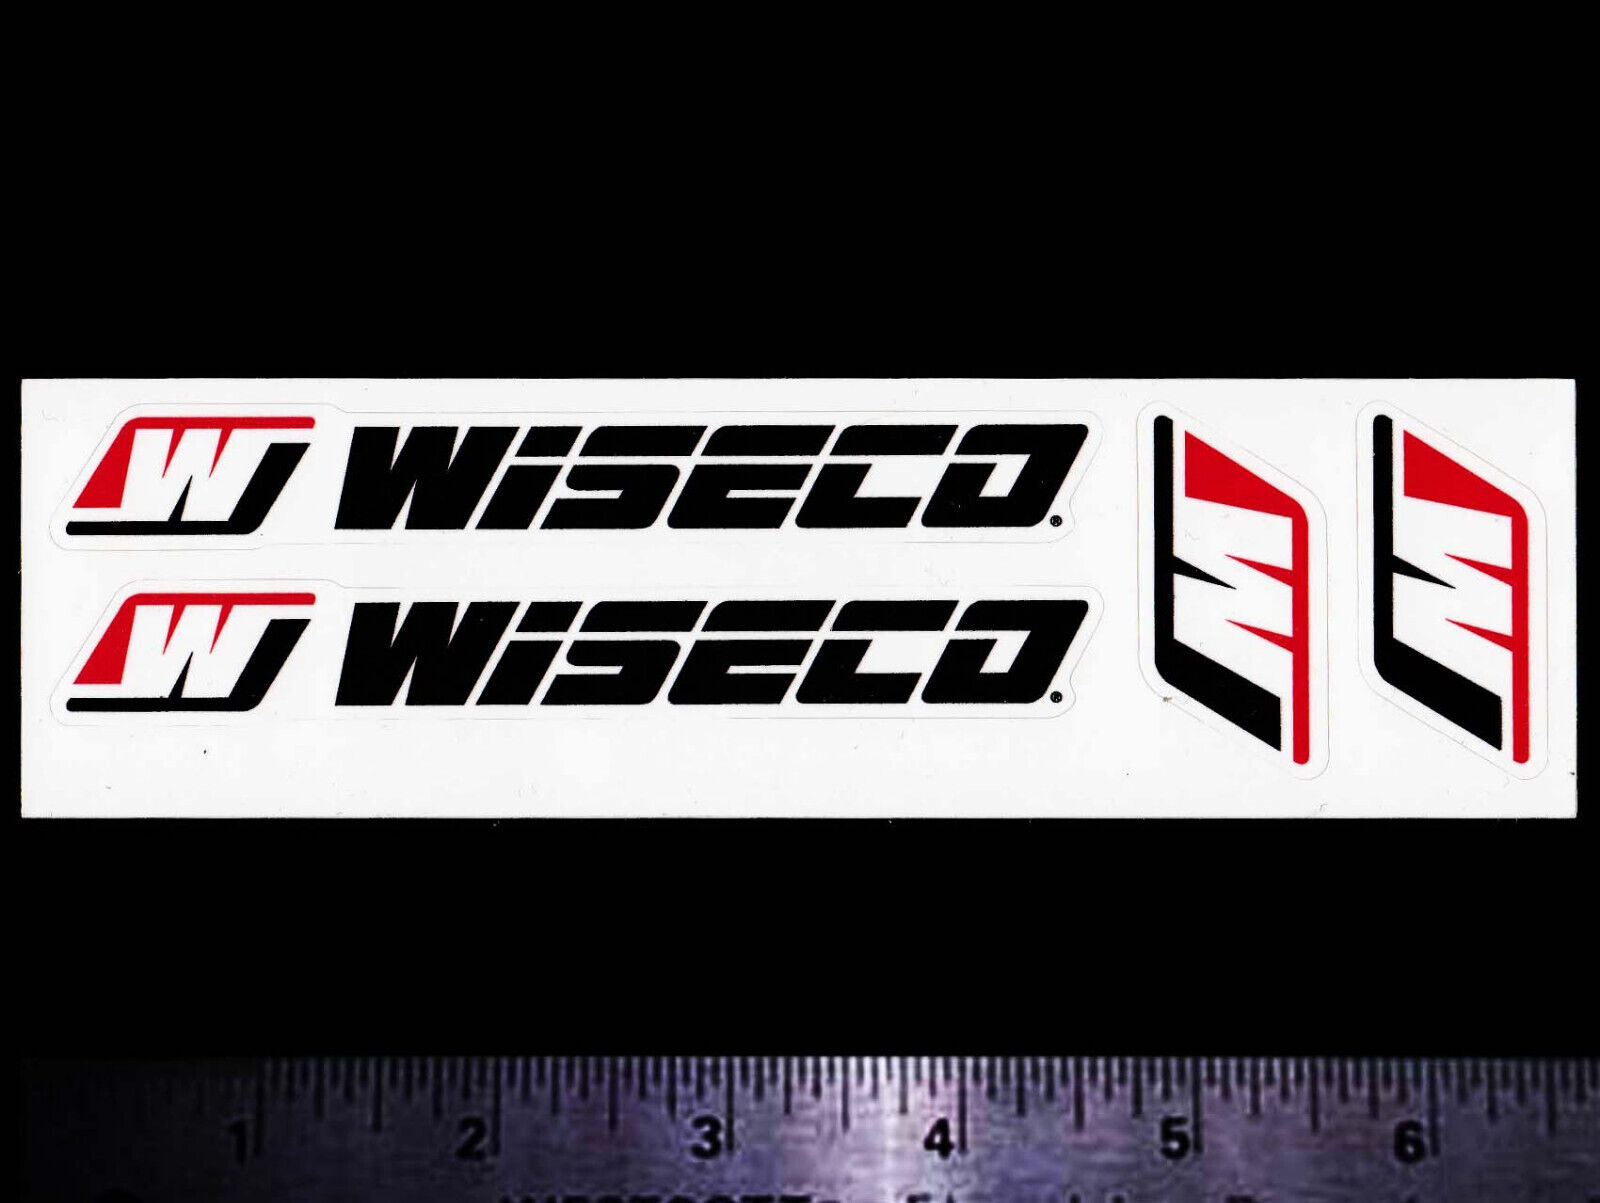 WISECO Pistons - Set of 4 Original Vintage Racing Decals/Stickers